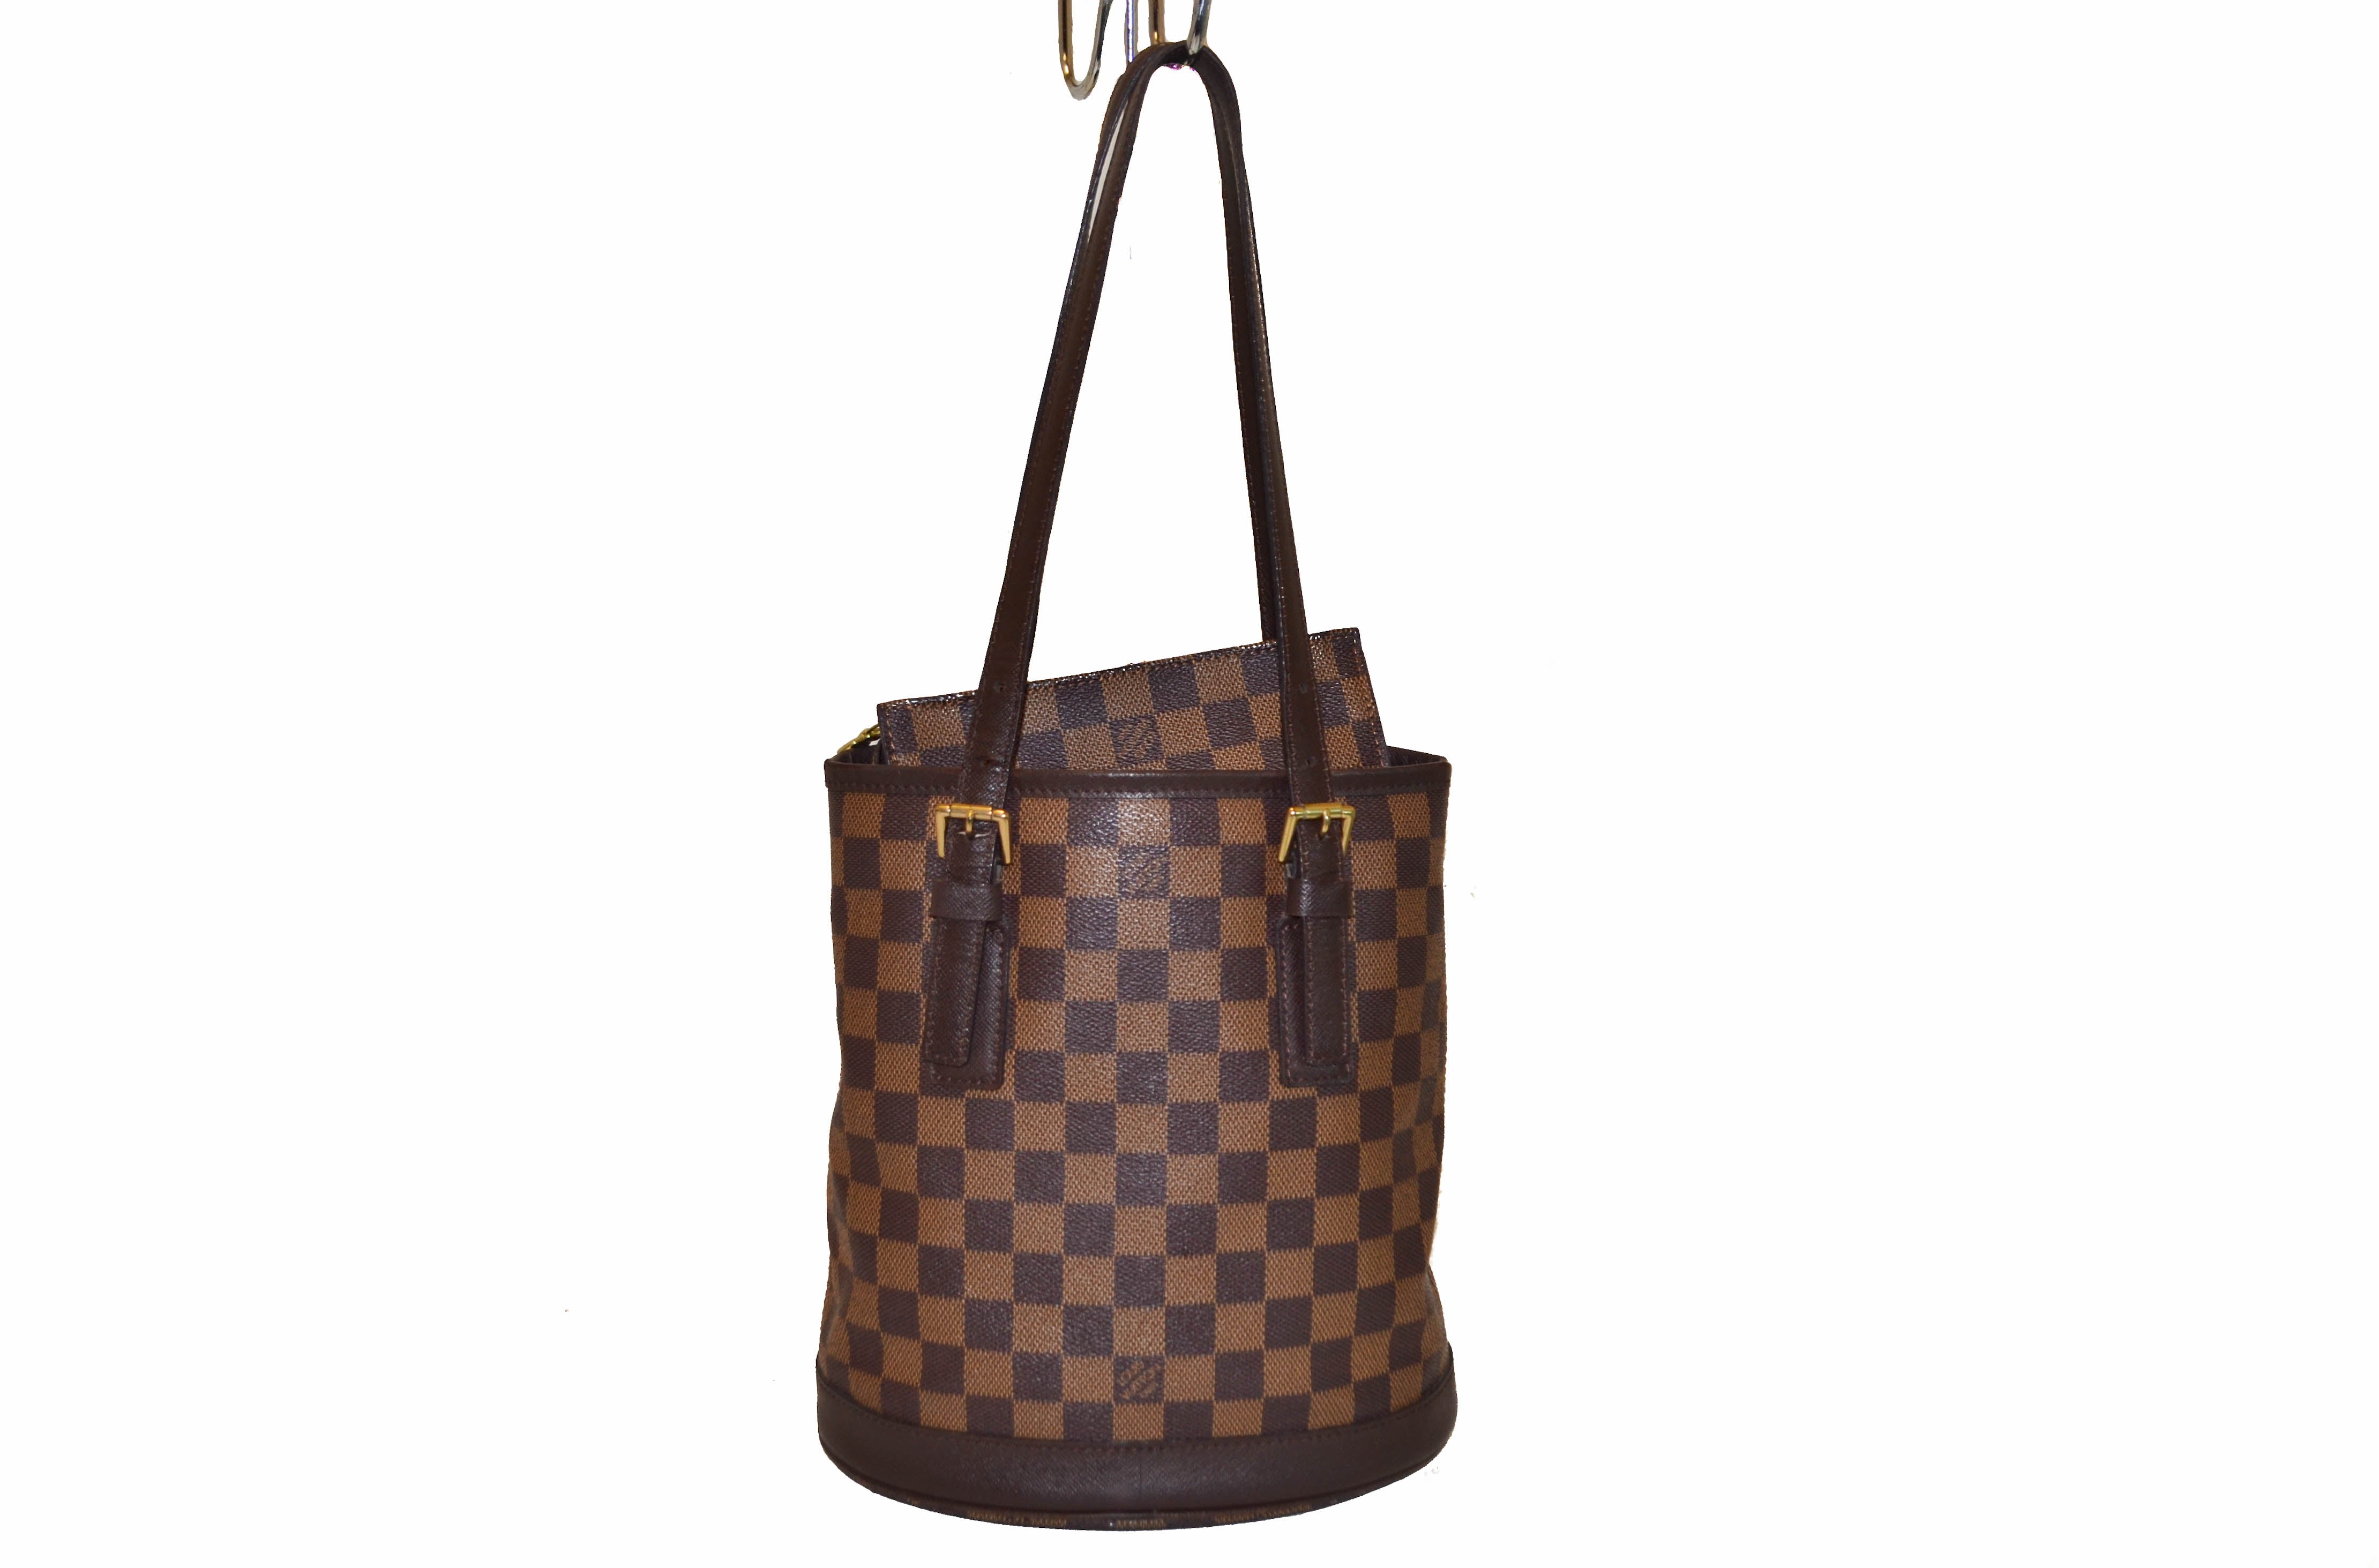 Authentic Louis Vuitton Damier Marais Bucket Shoulder Tote Bag